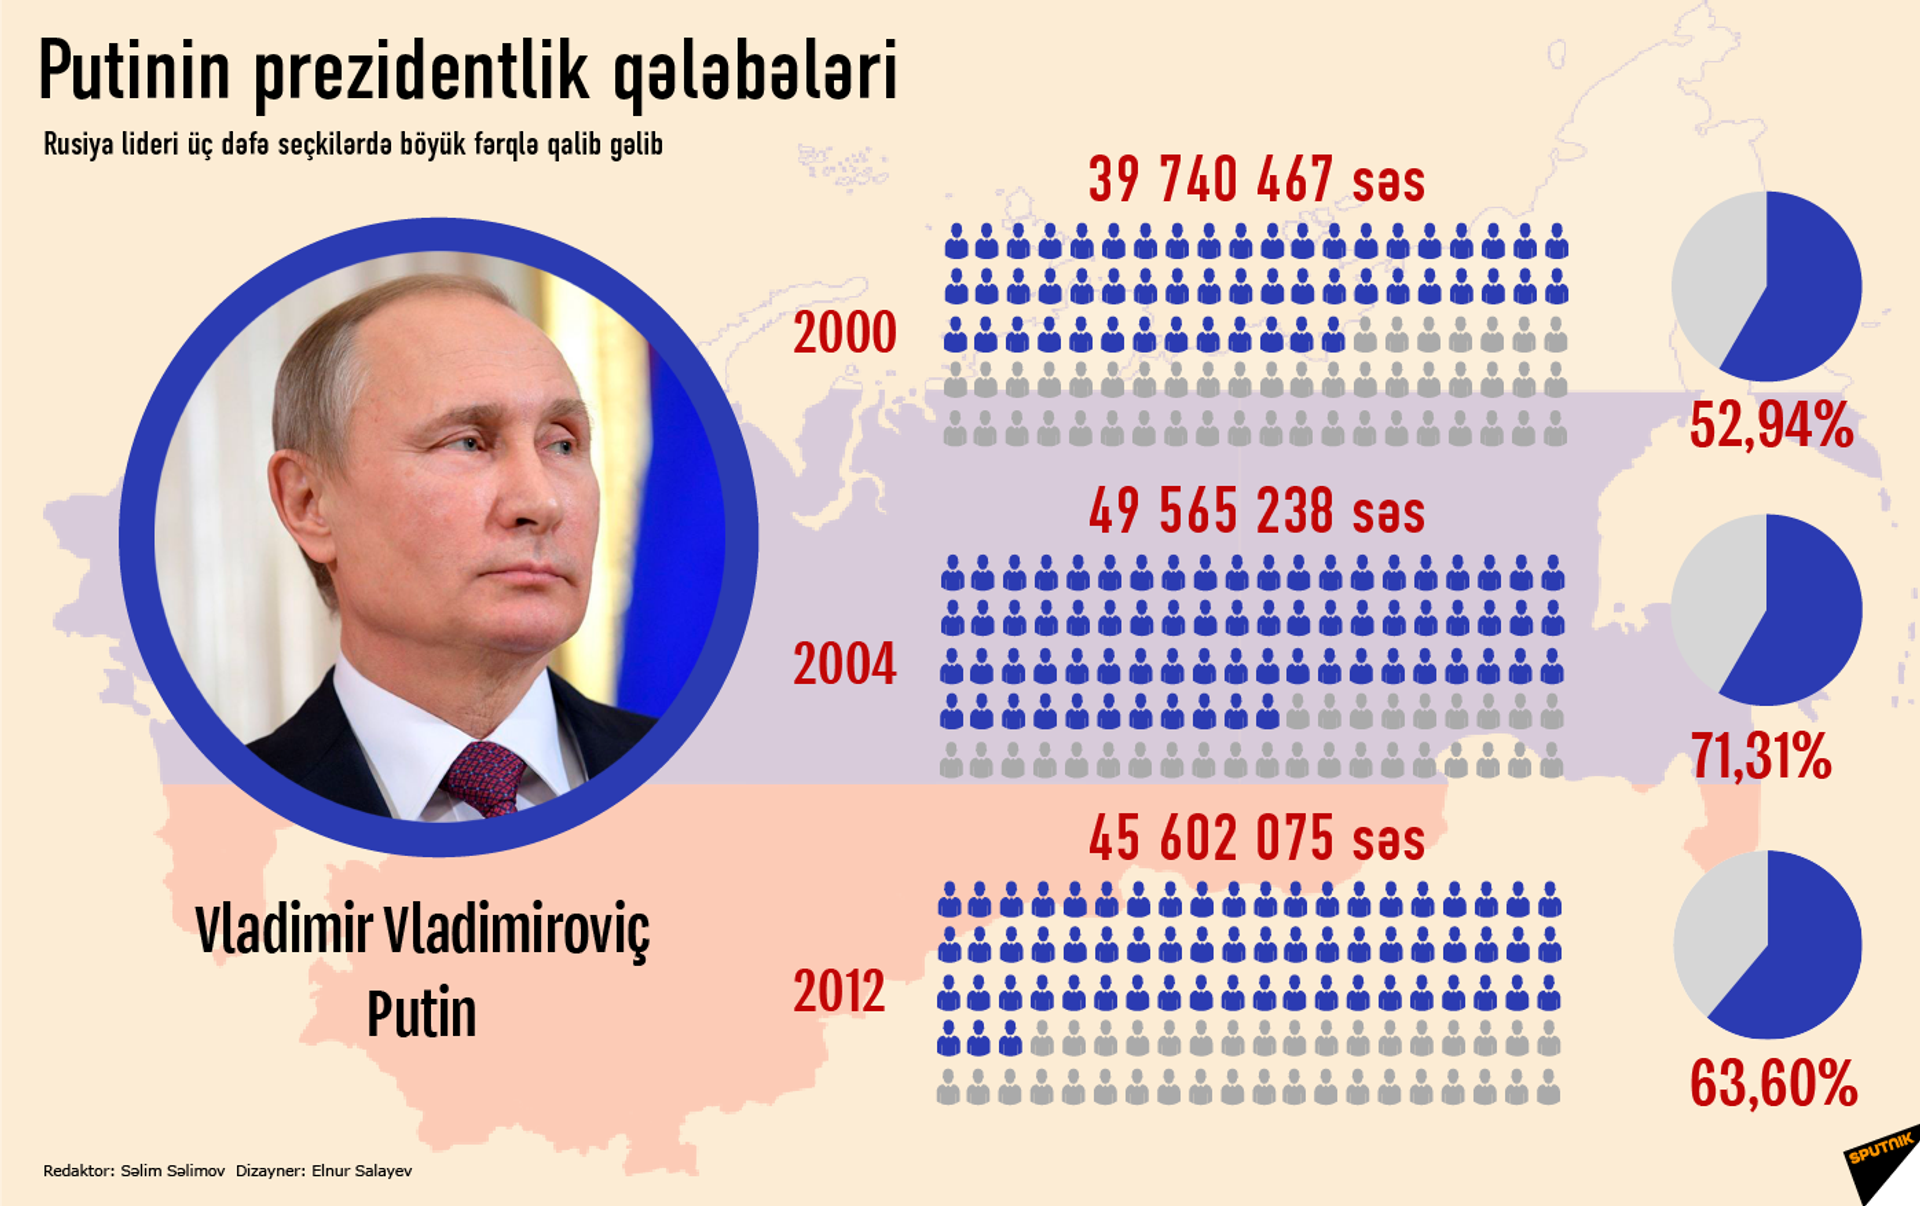 Когда в следующий раз выборы. Сколько людей за Путина. Сколько за Путина на выборах. Сколько людей проголосовало за Путина на выборах.